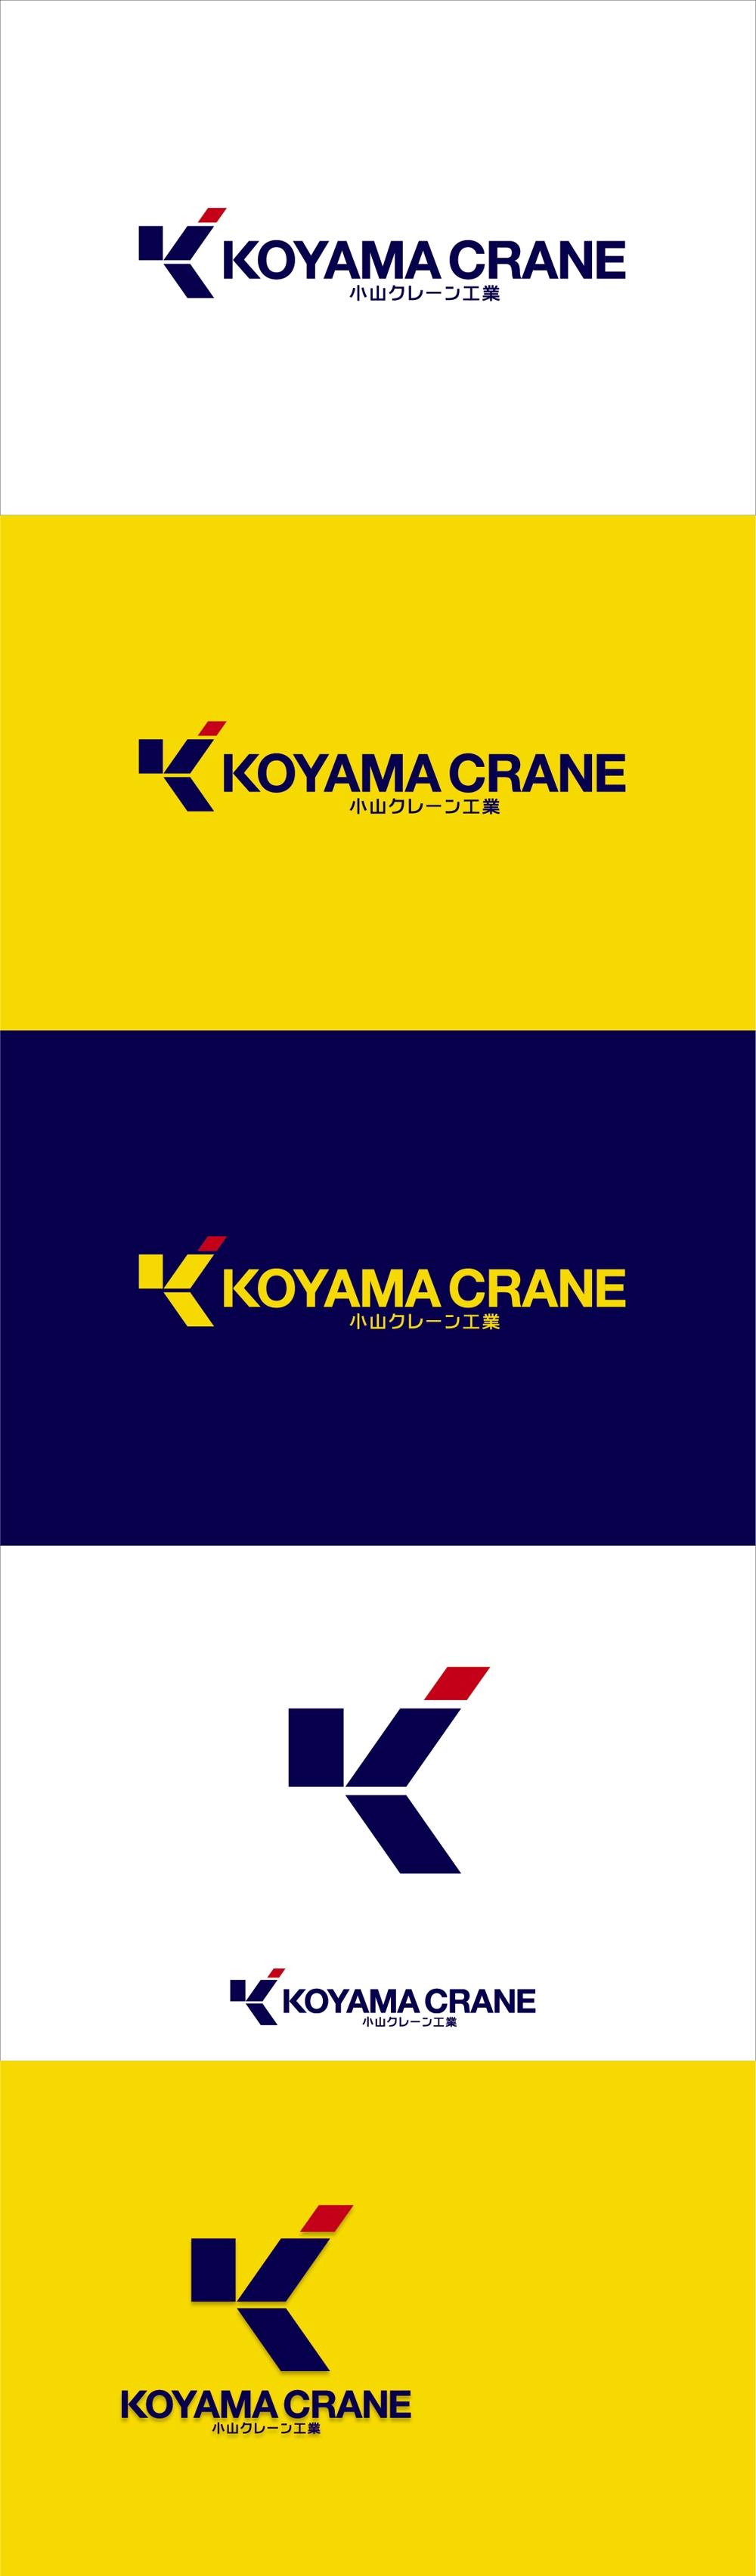 koyamacrane3.jpg